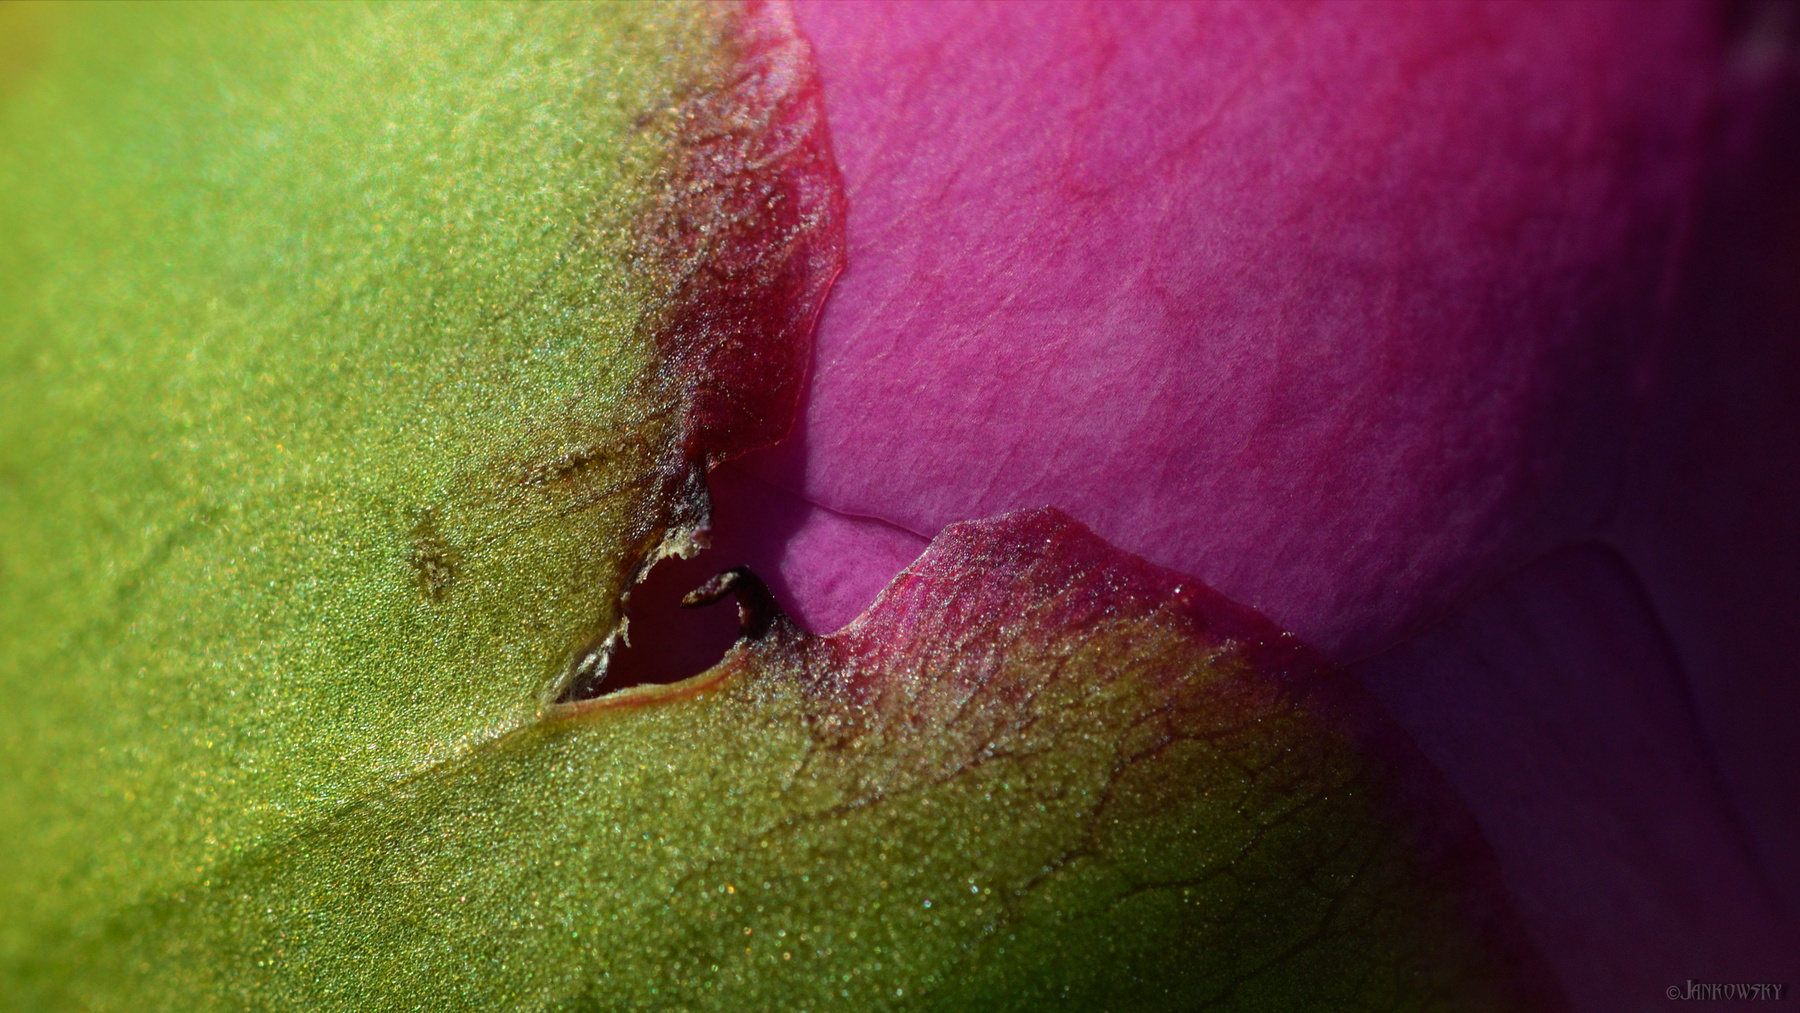 Золотое сечение бутона пиона пионы бутон зеленый розовый деление граница tamron 180mm macro сад